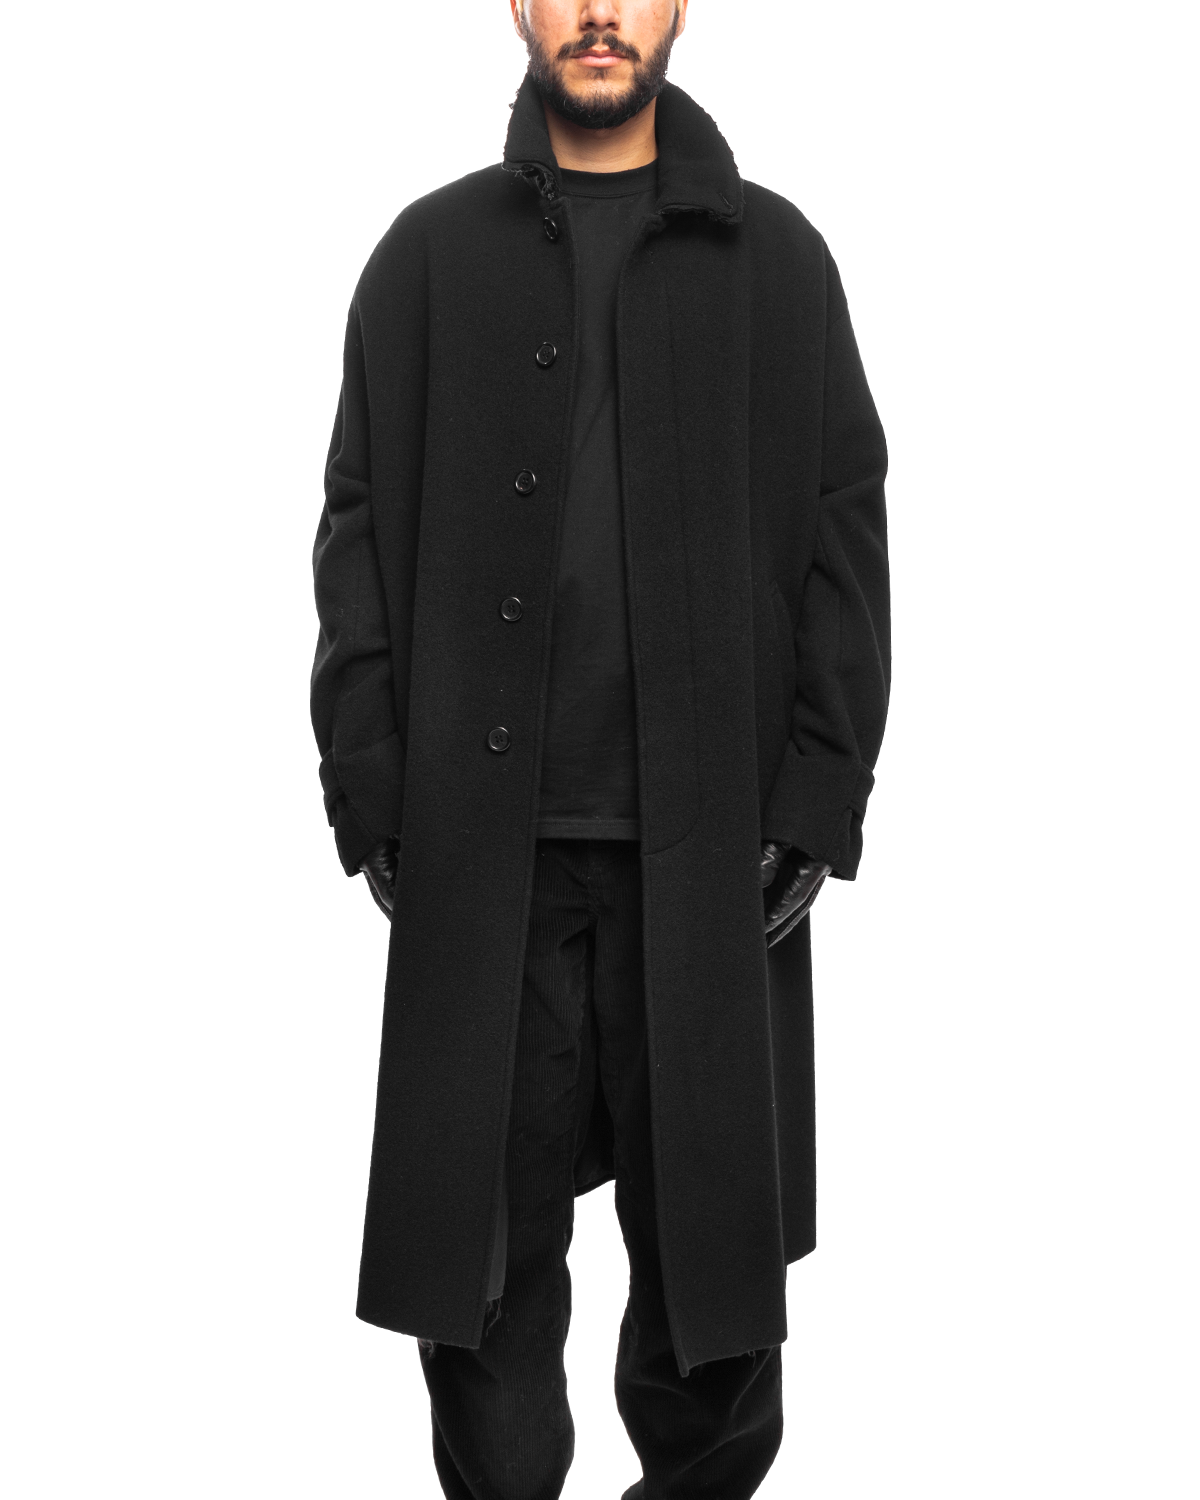 UP2C4303 Coat Black